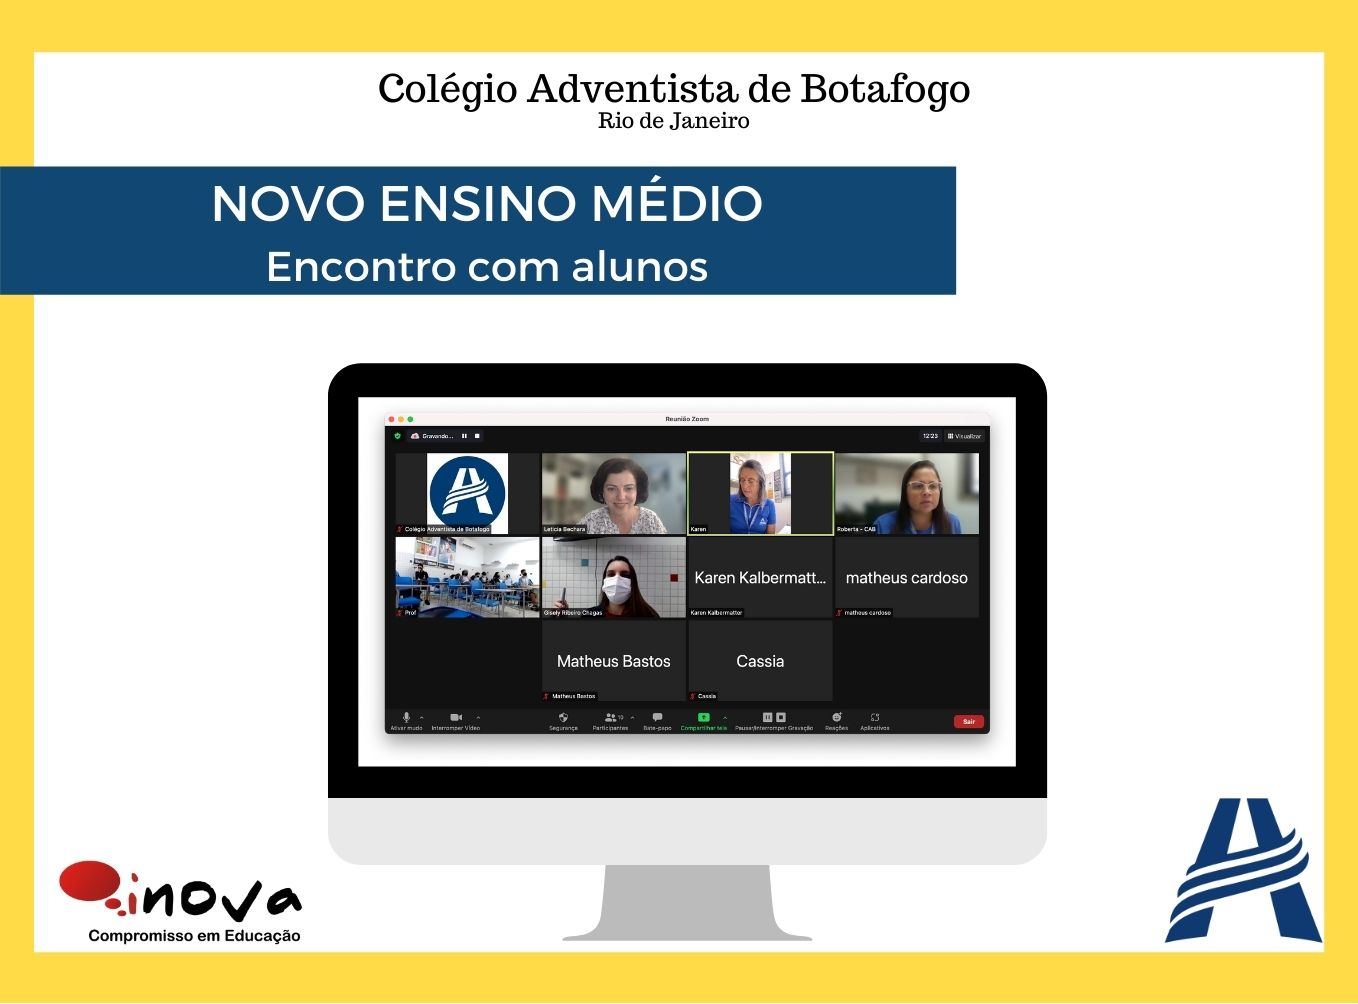 Colégio Adventista de Botafogo - Novo Ensino Médio